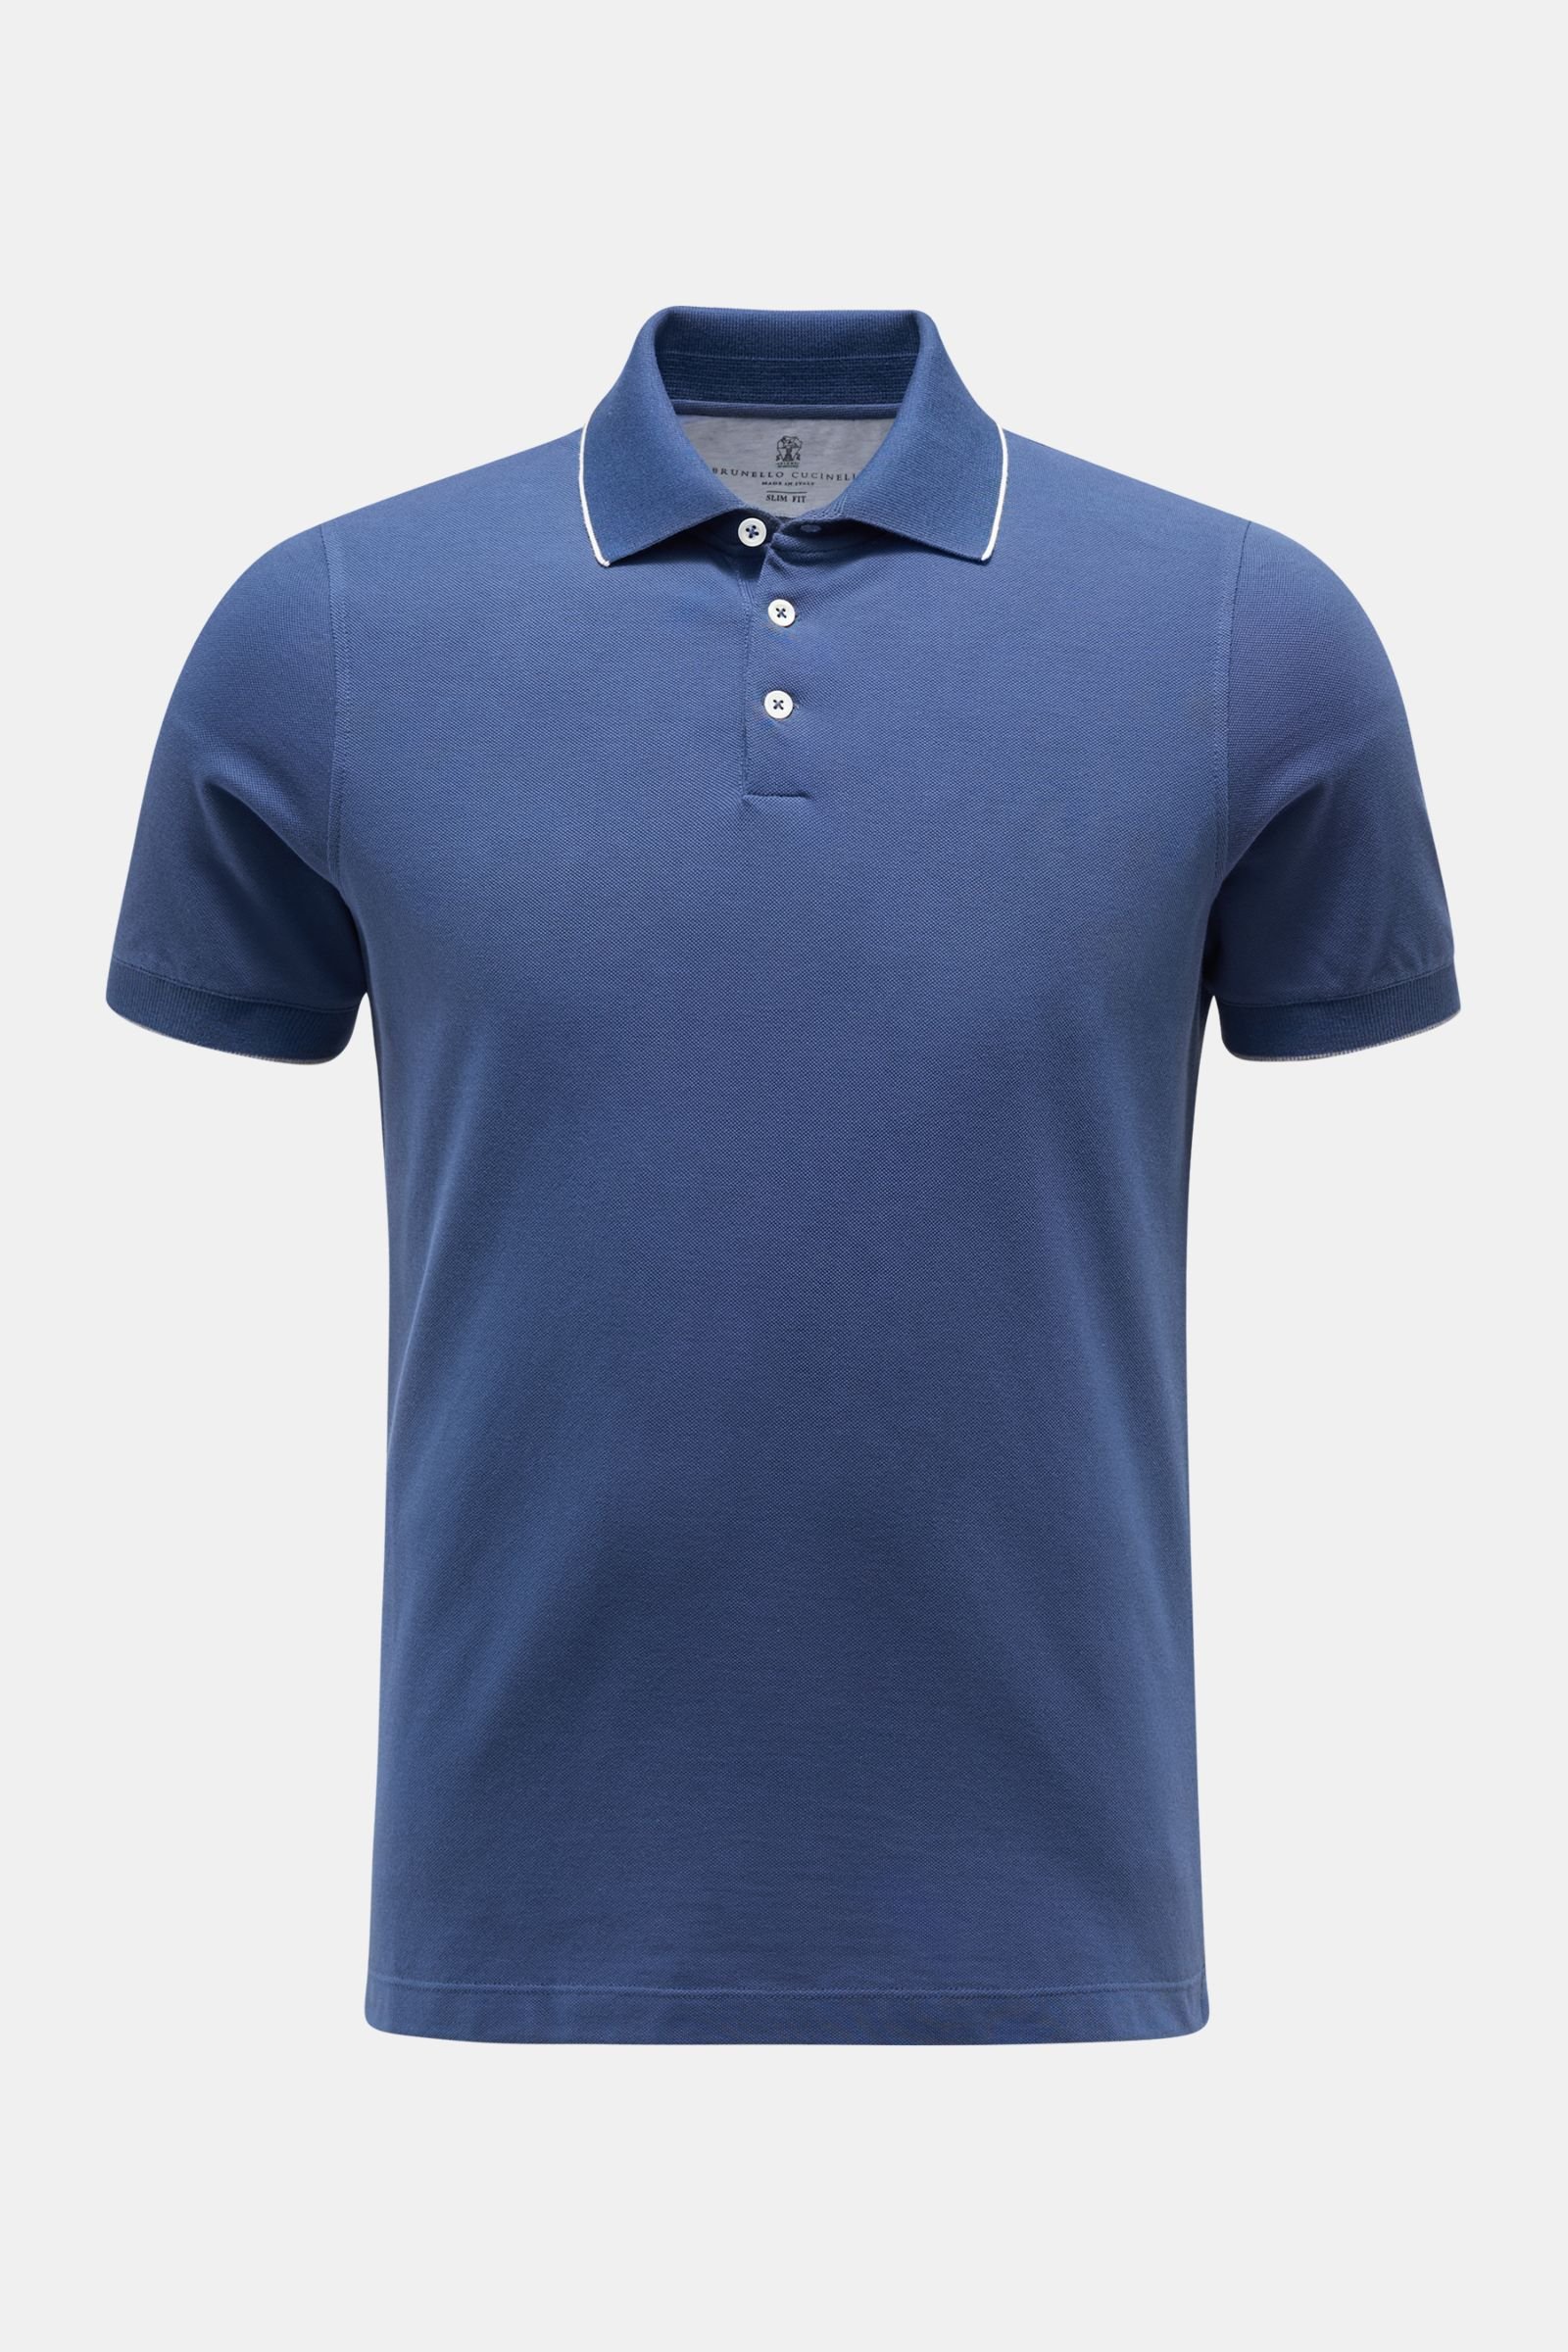 Polo shirt dark blue